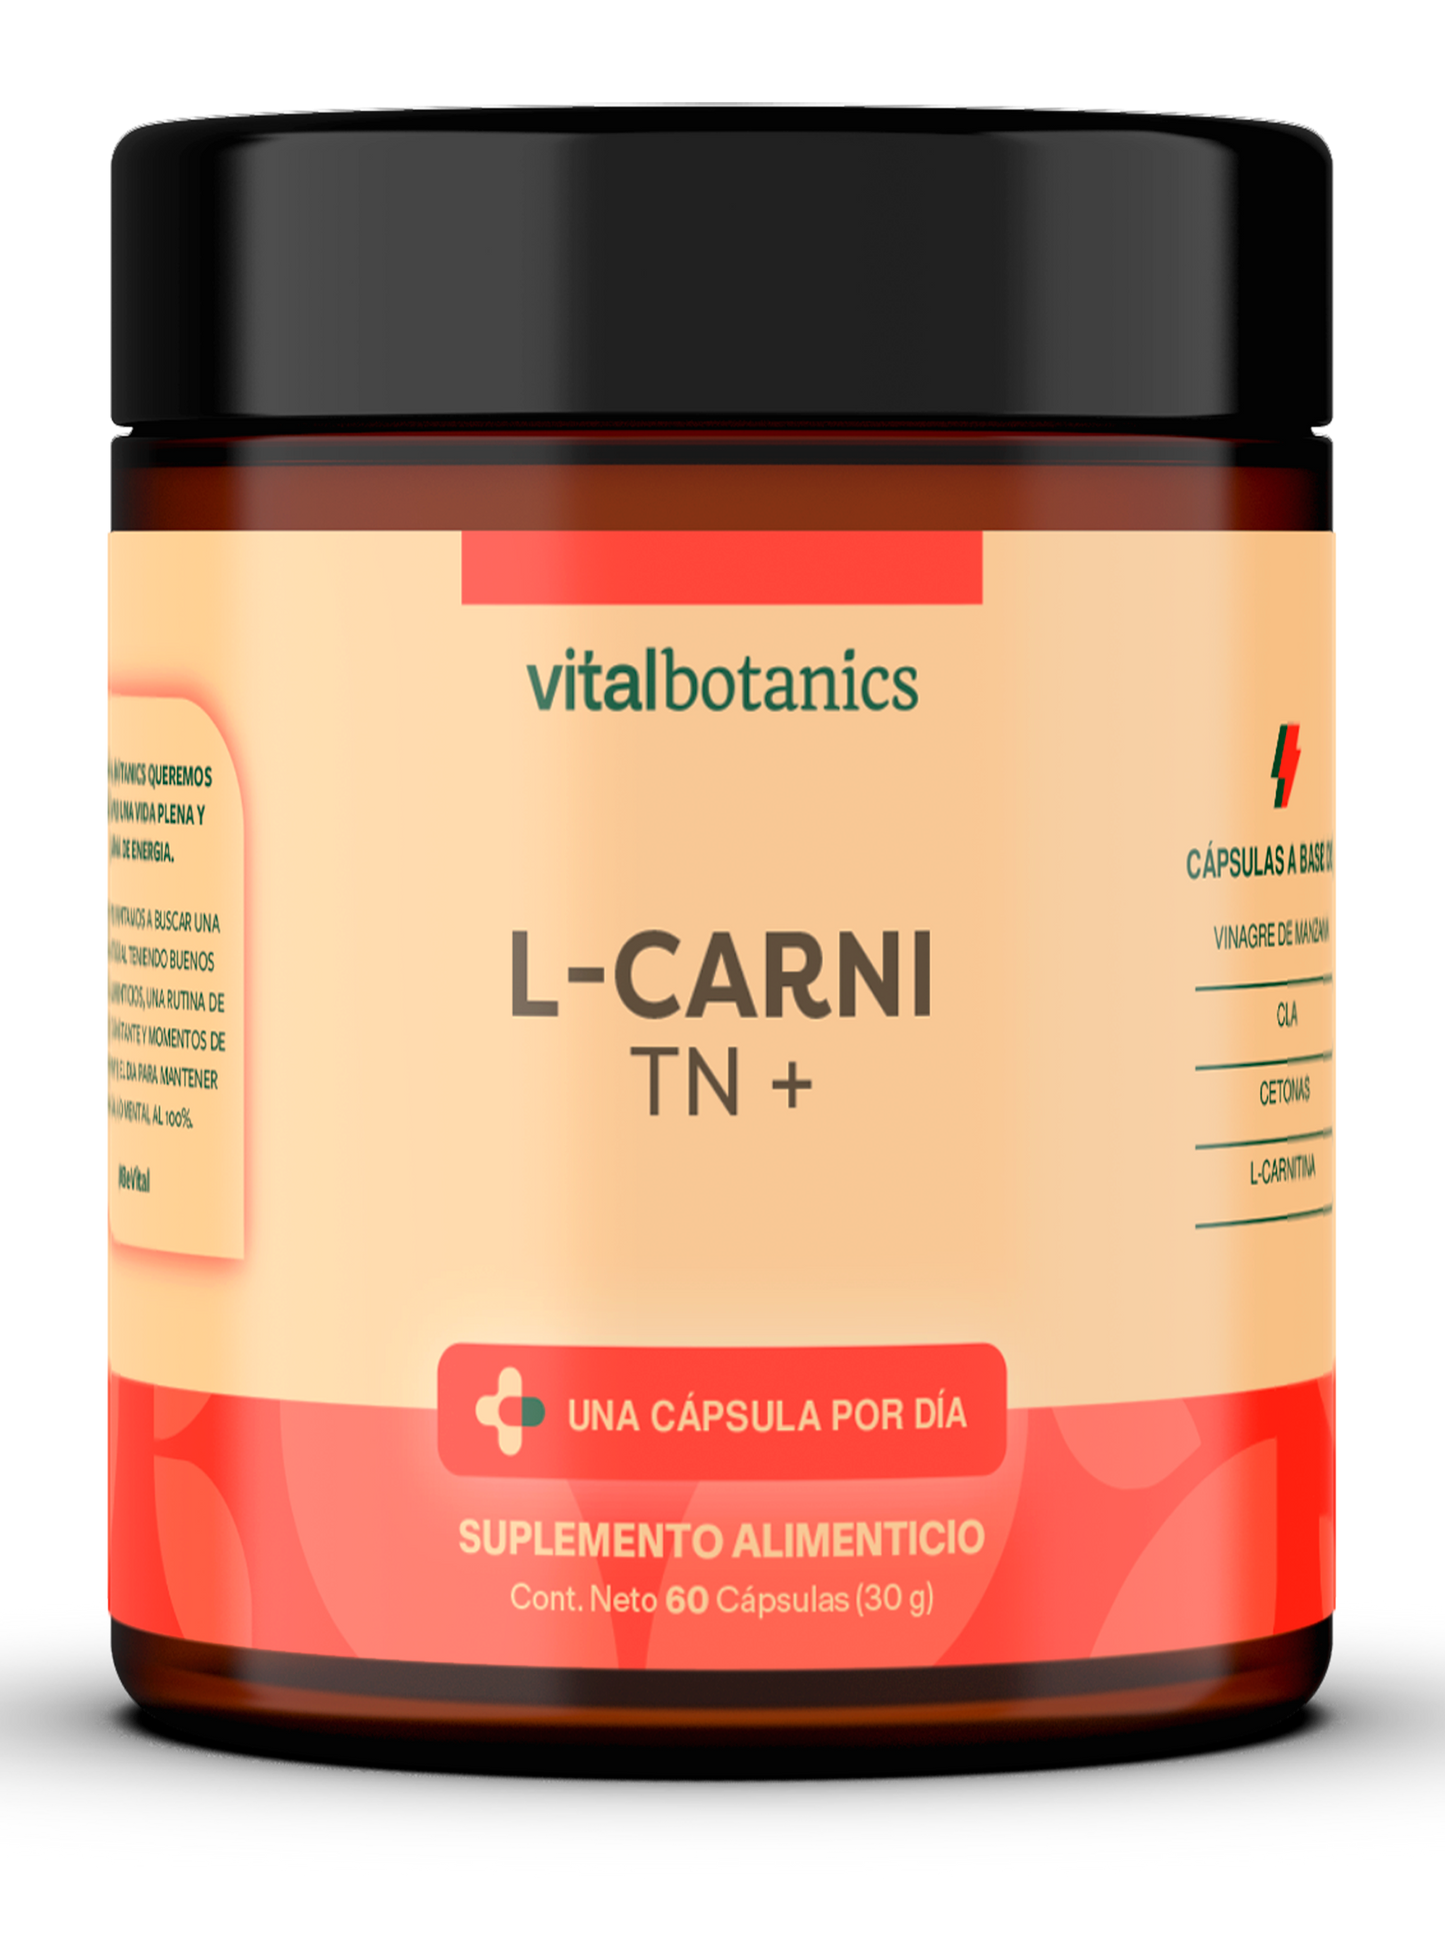 L-CARNI TN + | CLA, L-Carnitina, Cetonas de Frambuesa y Vinagre de Manzana